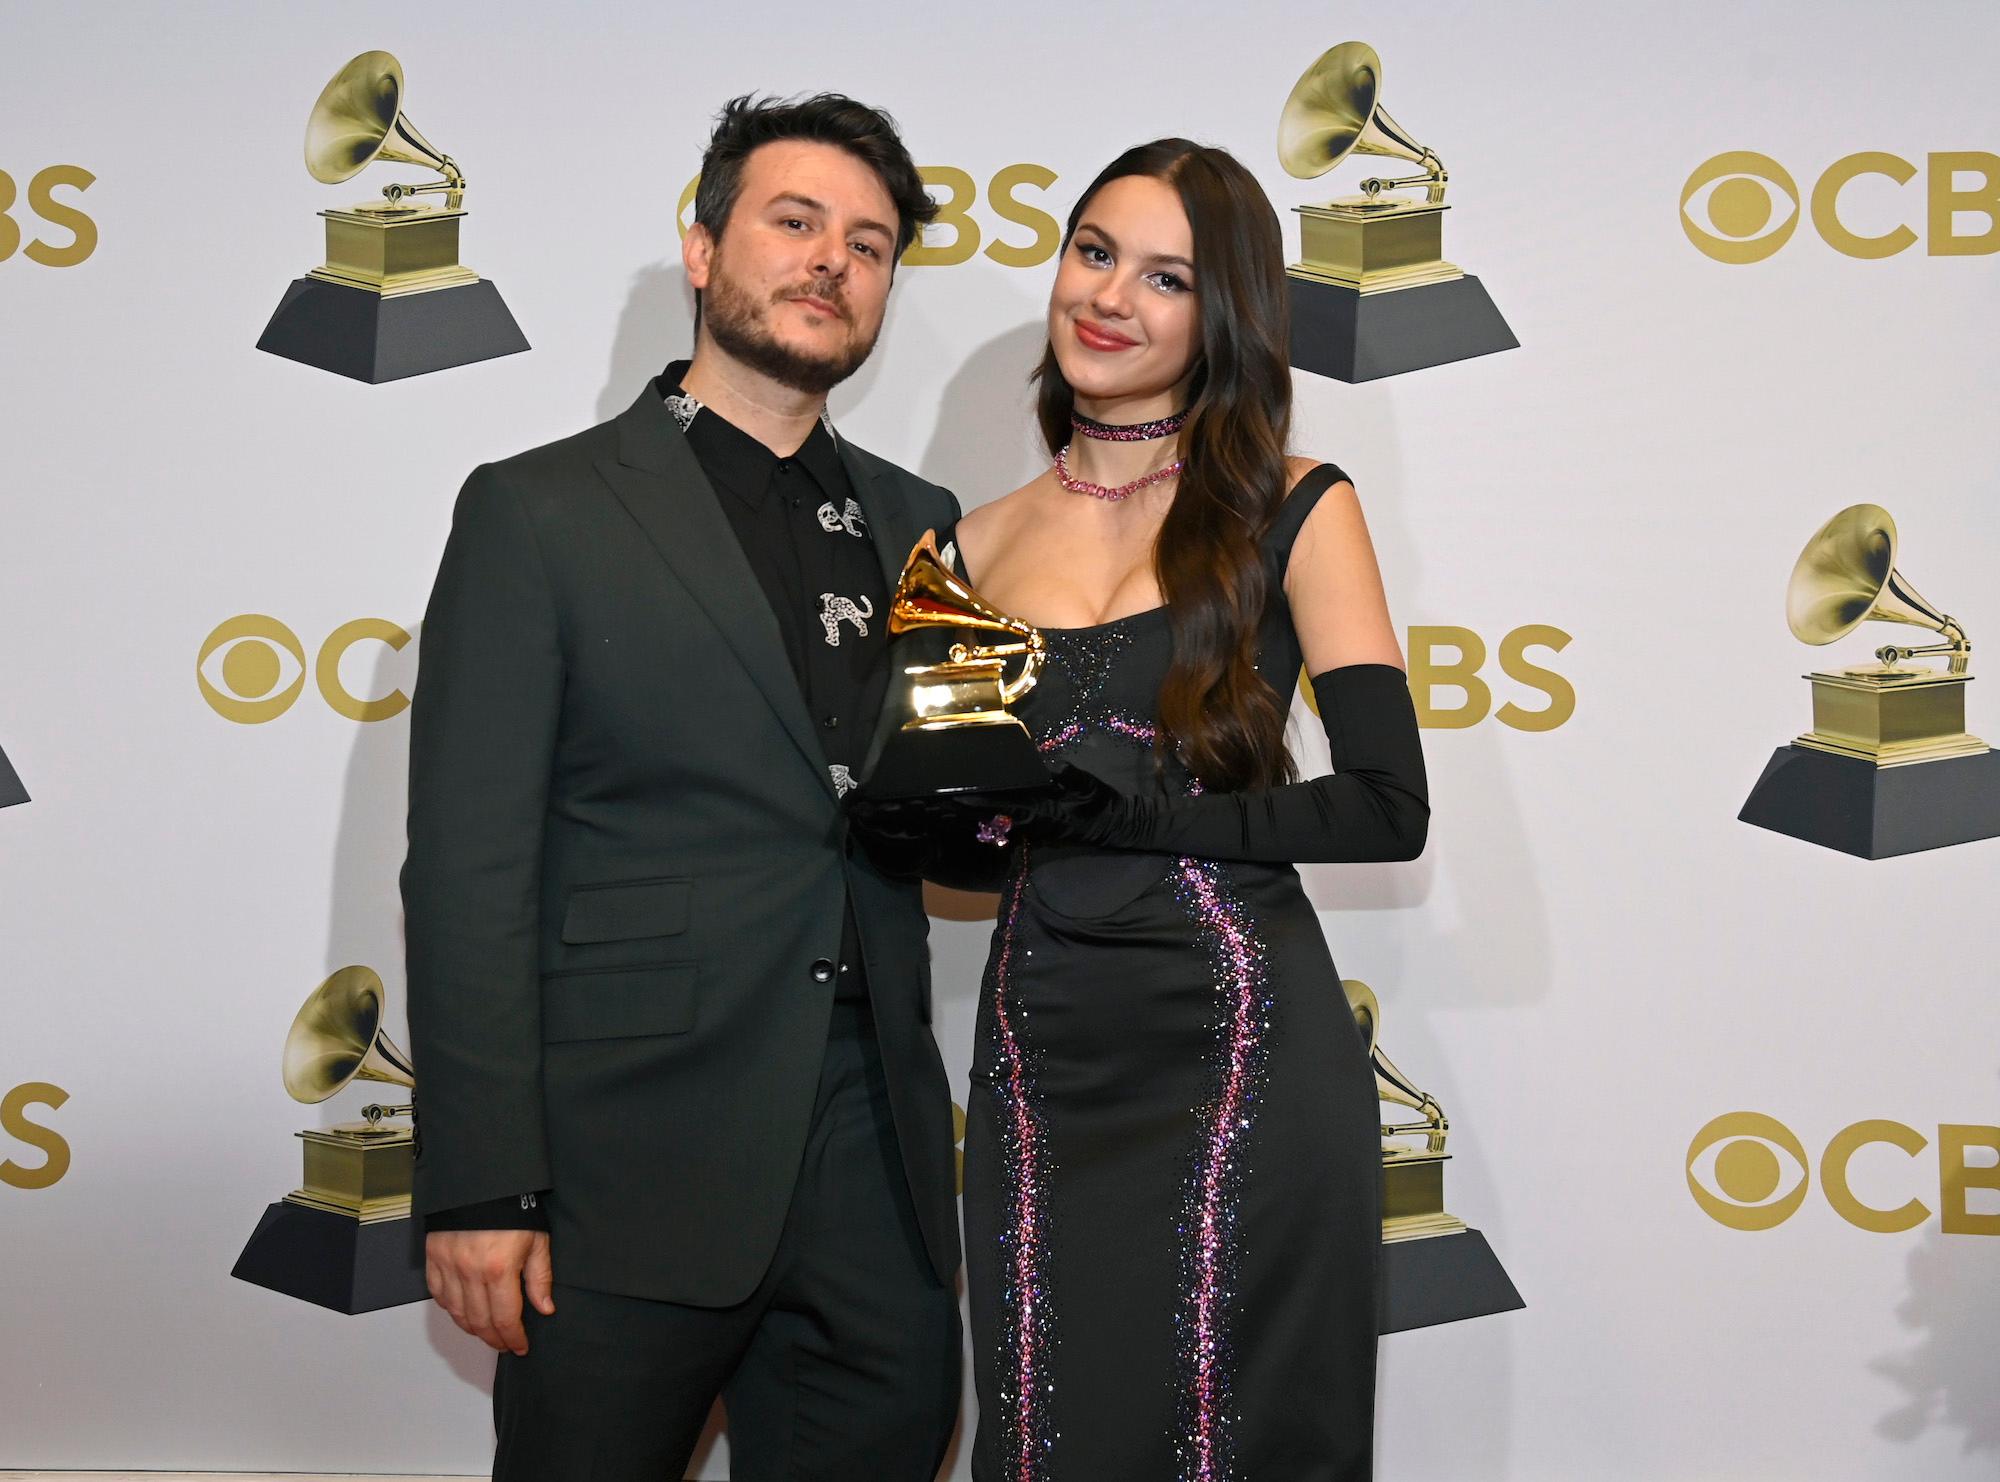 丹·尼格罗 (Dan Nigro) 和奥利维亚·罗德里戈 (Olivia Rodrigo) 在第 64 届格莱美颁奖典礼上与格莱美合影